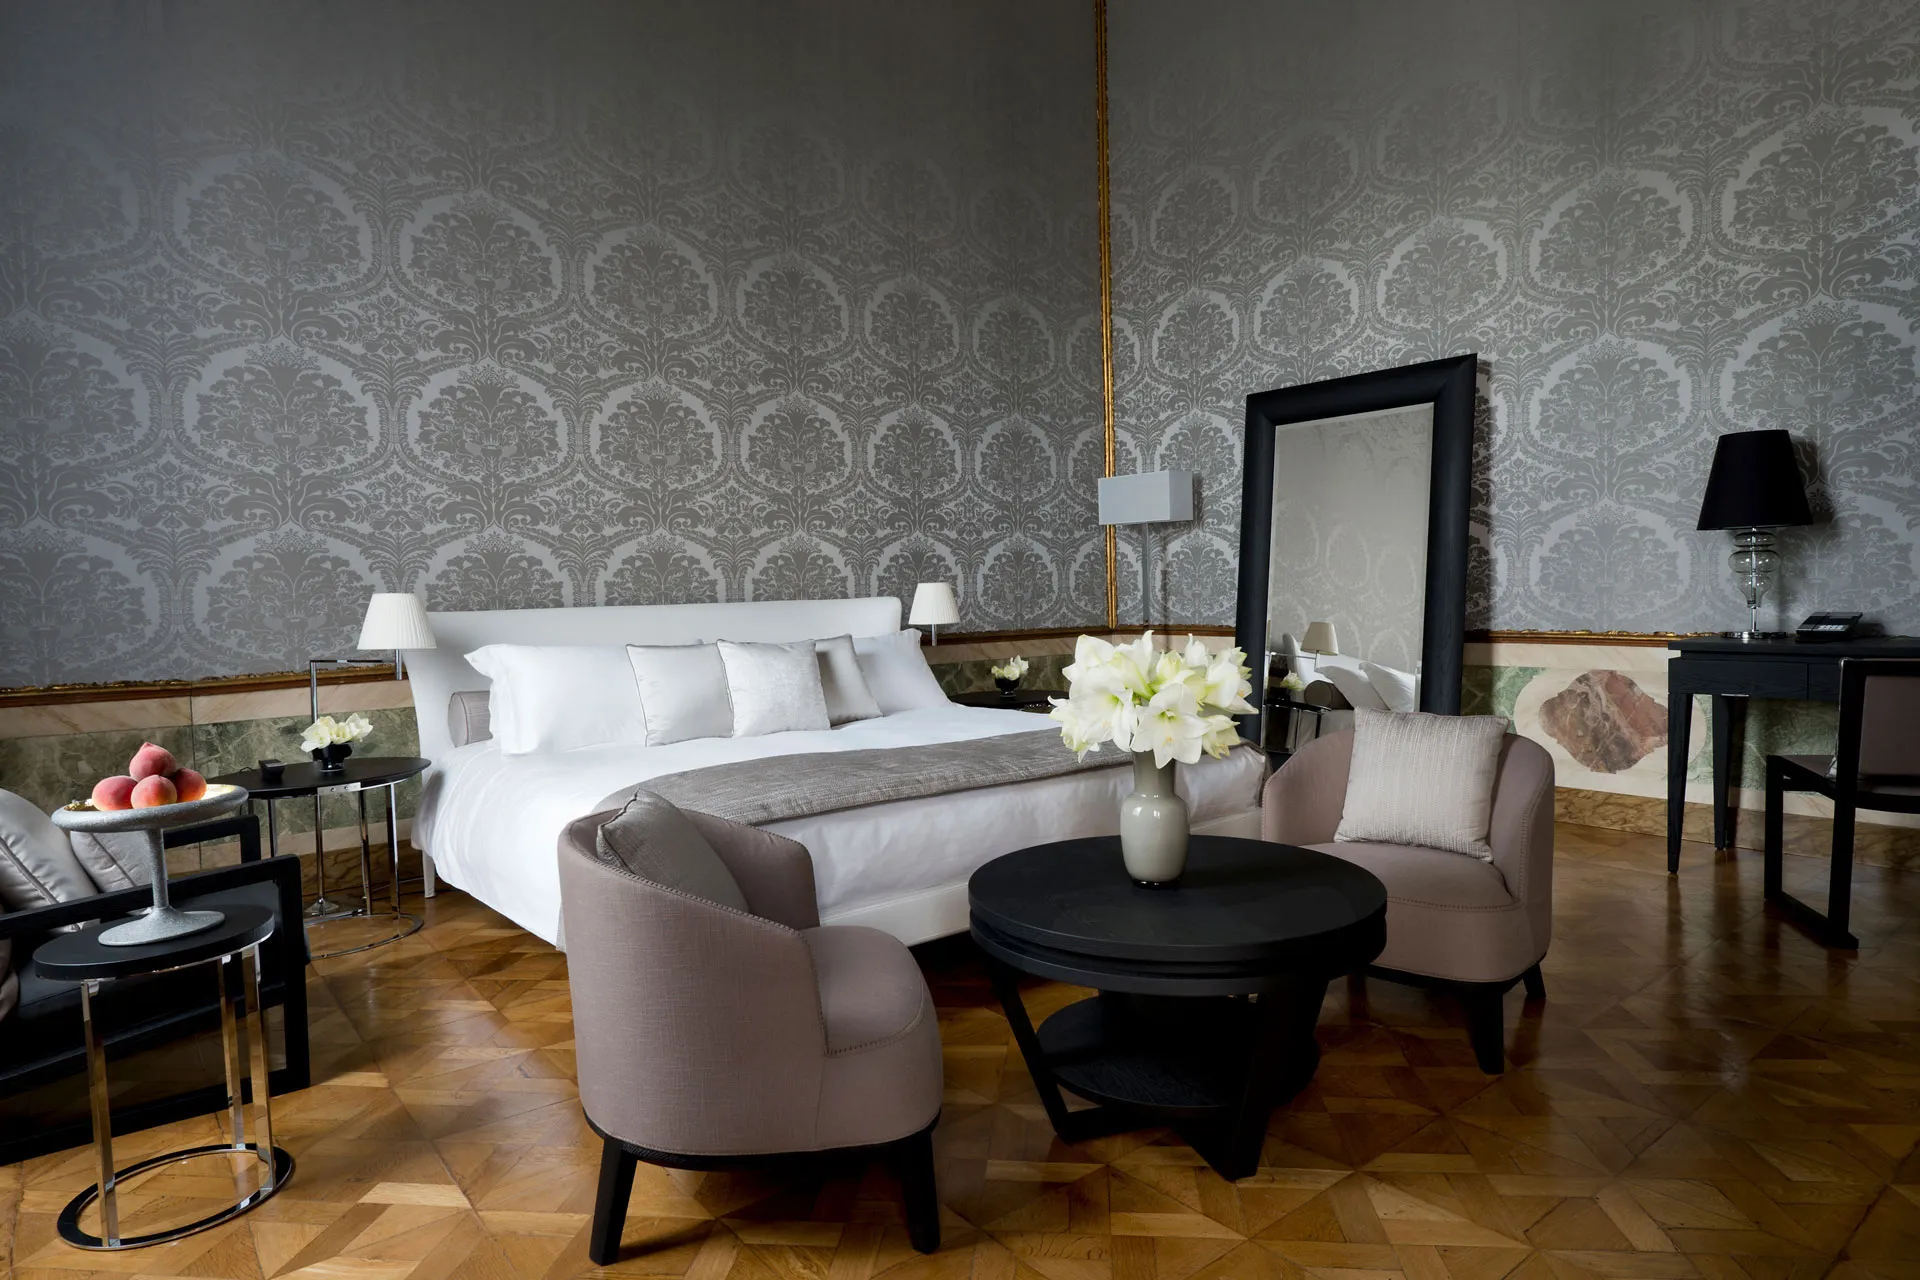 Doppelbett vor grau tapezierter Wand mit Muster